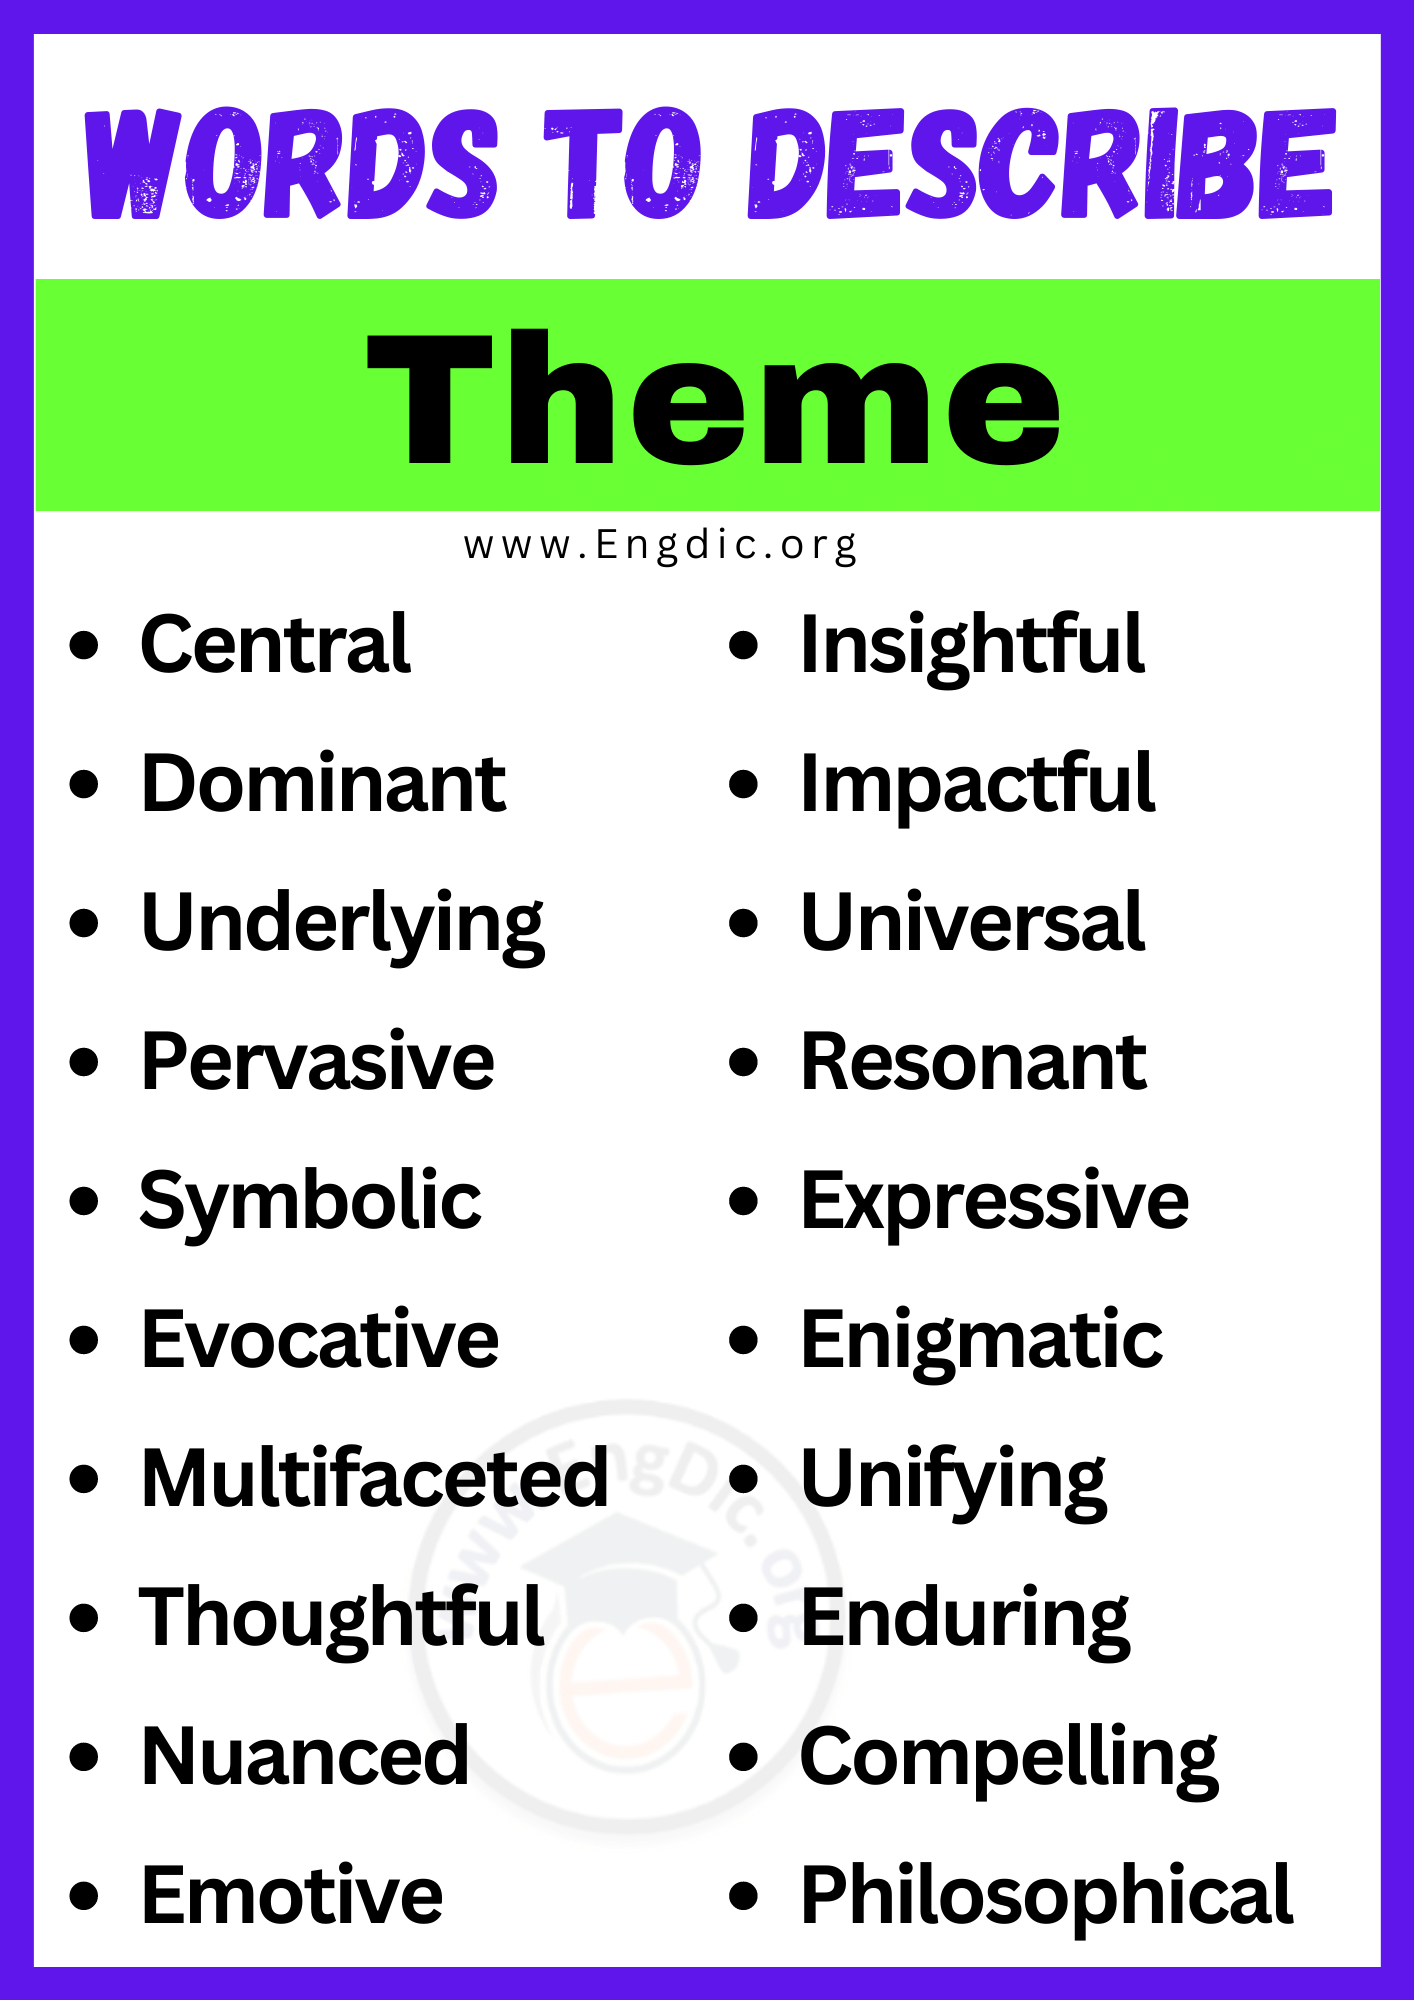 Words to Describe Theme